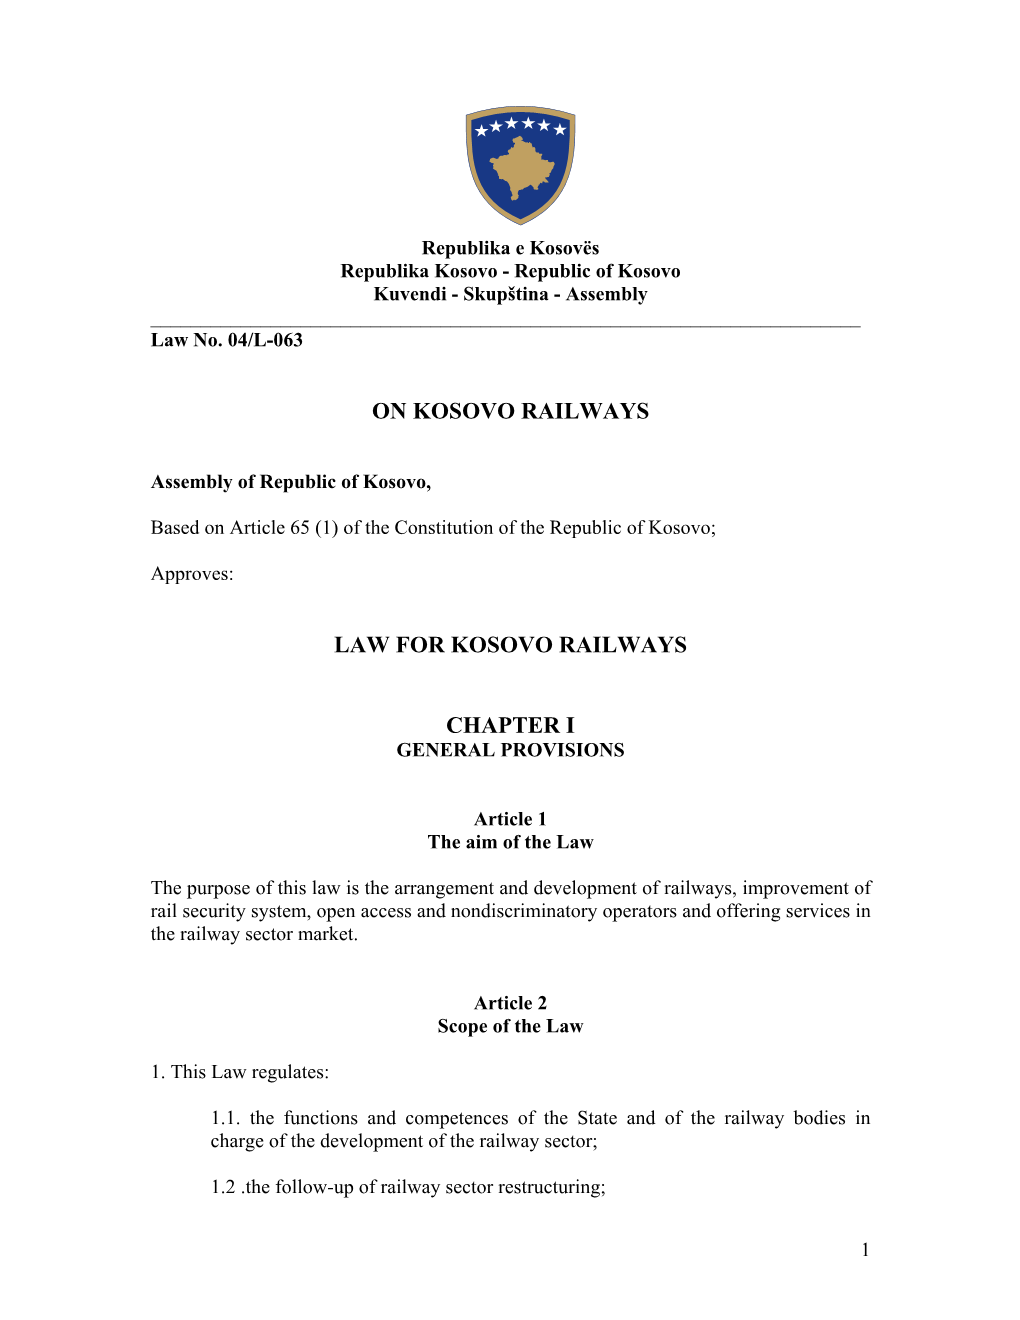 On Kosovo Railways Law for Kosovo Railways Chapter I